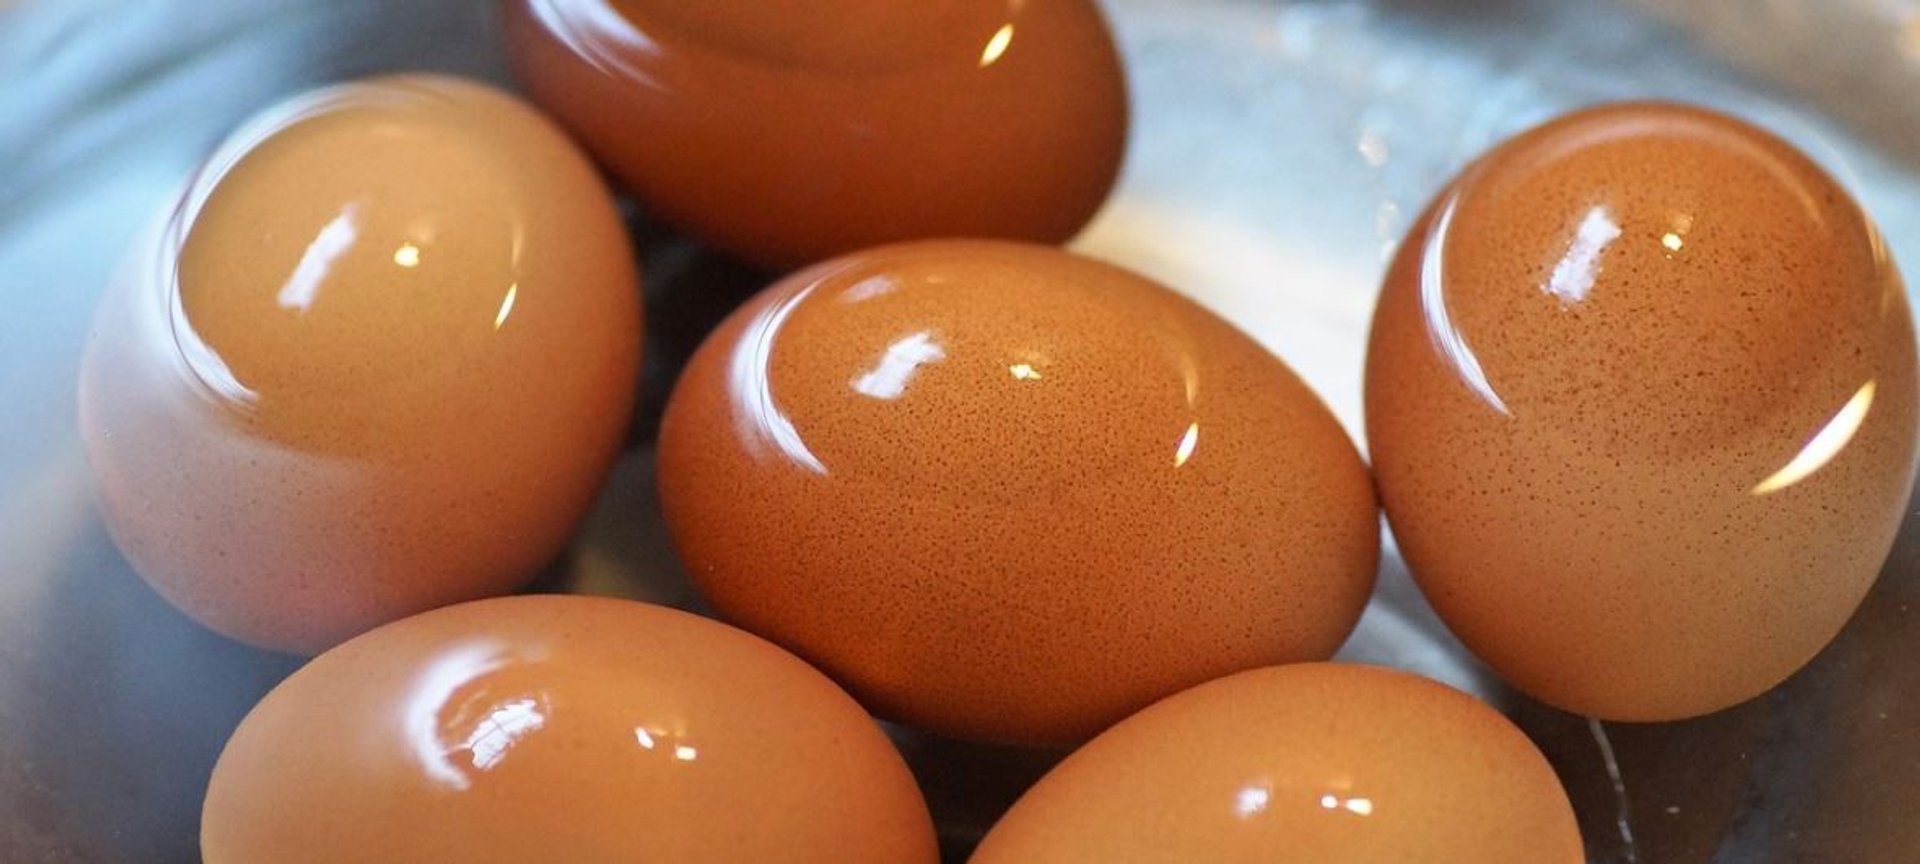 Jajka można przygotowywać na różne sposoby